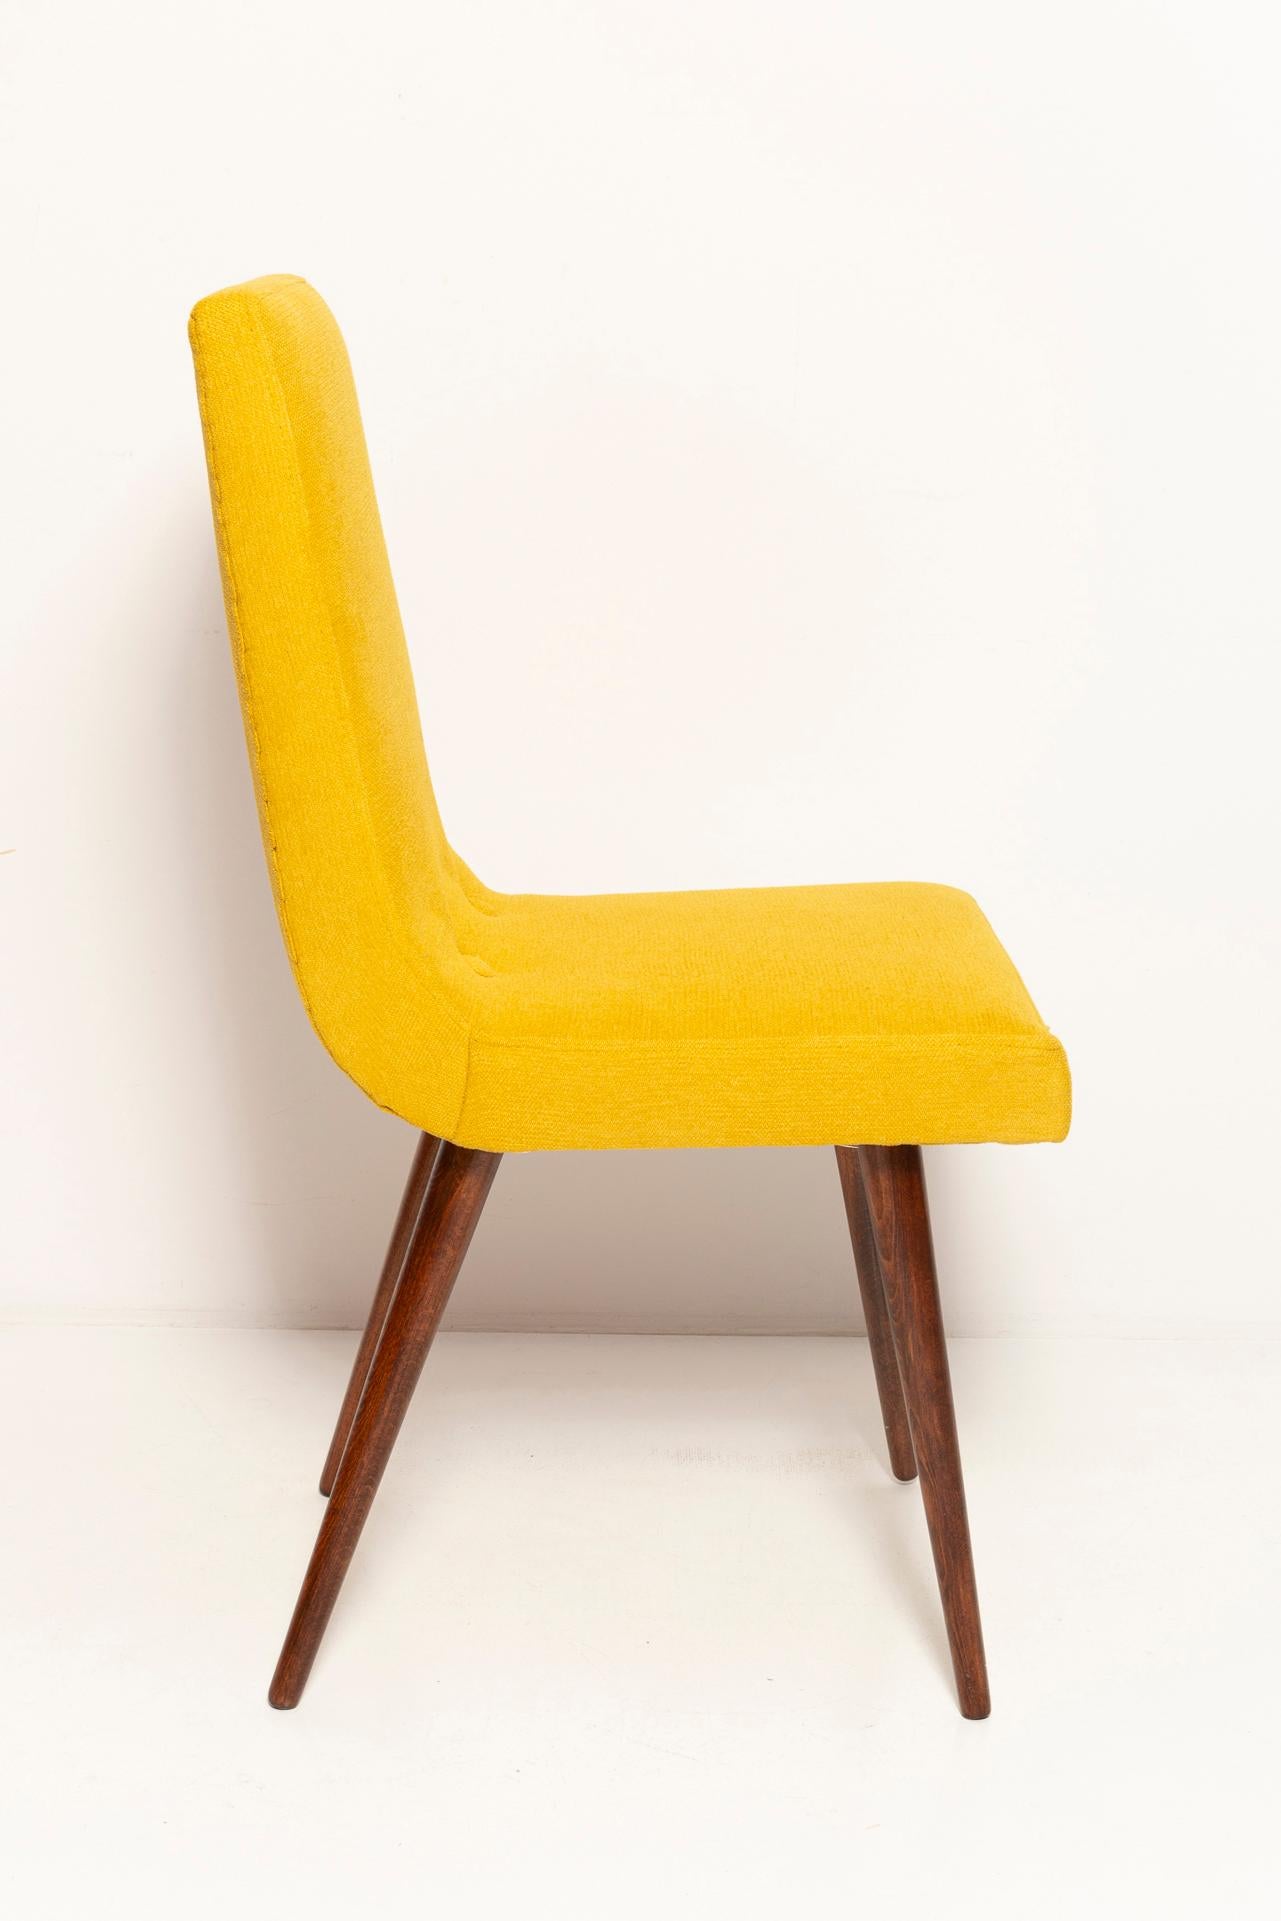 Textile Set of Ten Midcentury Mustard Yellow Wool Chairs, Rajmund Halas Europe, 1960s For Sale